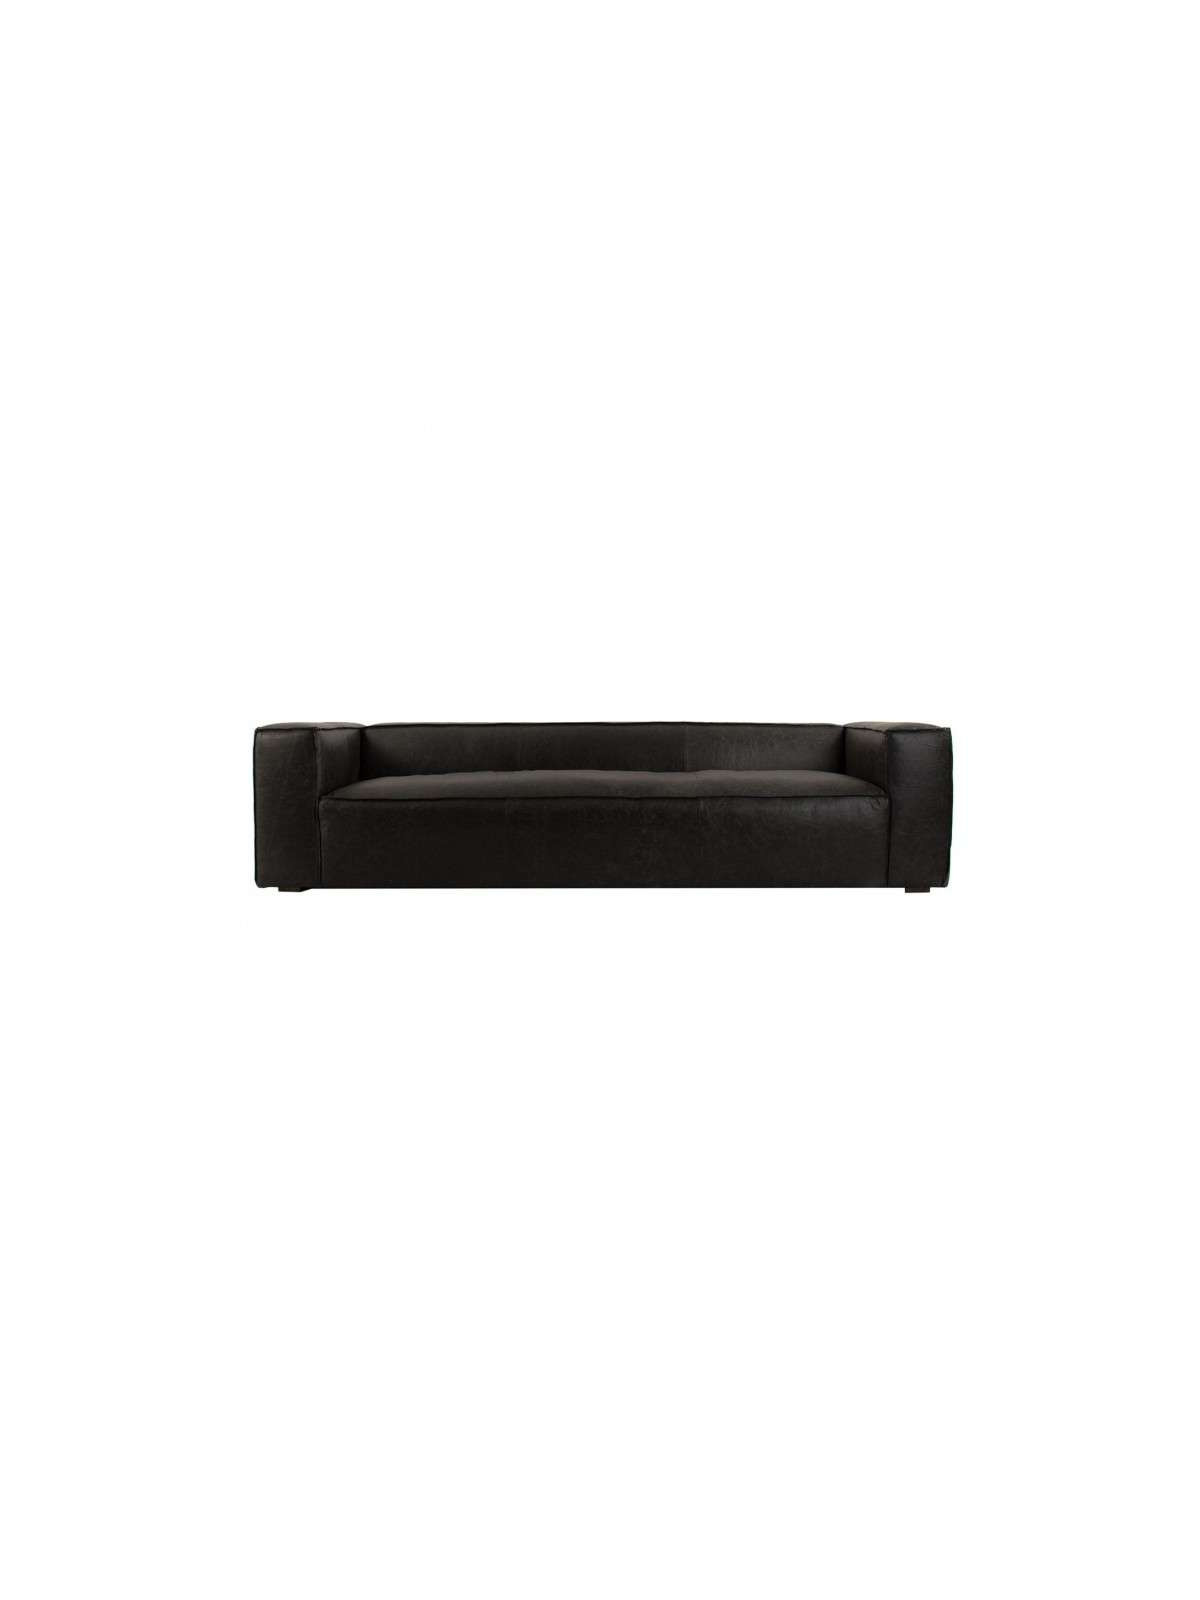 Grand canapé 280 cm en cuir noir chic